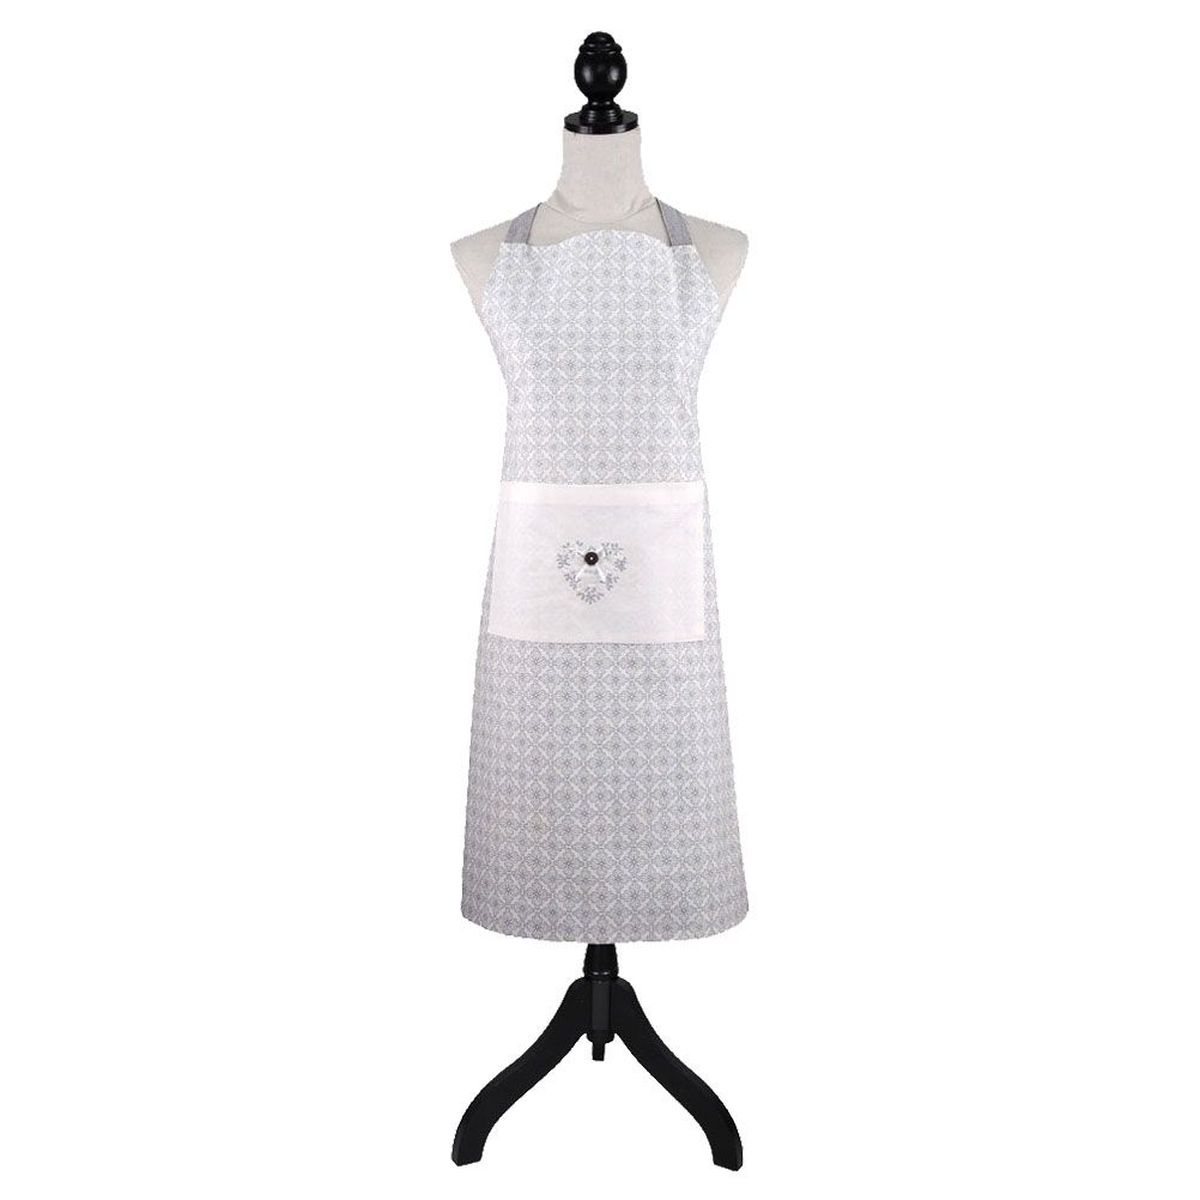 Adult cotton apron Manoir collection